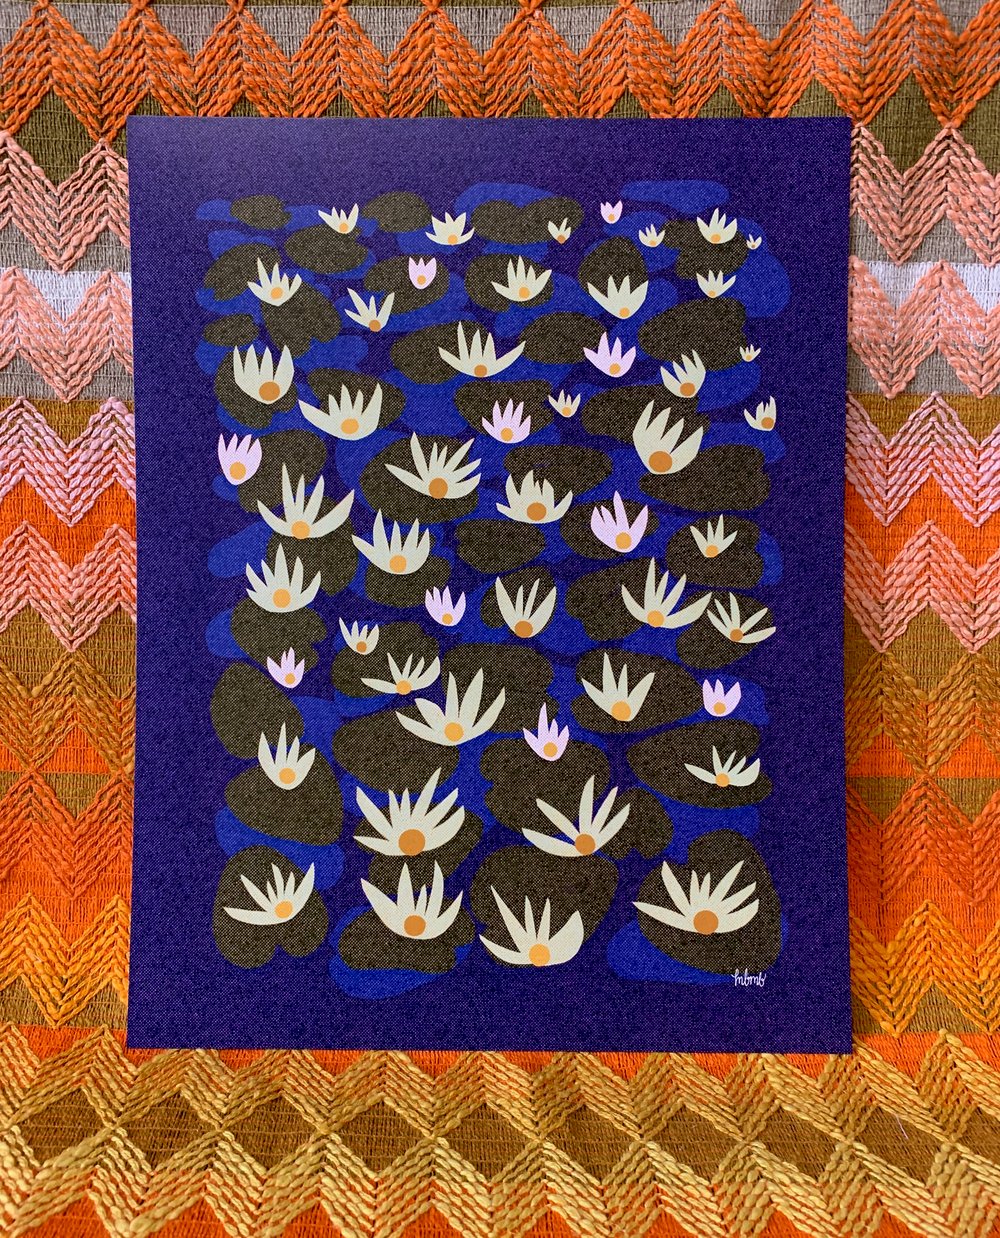 Water Lillies-11 x 14 print